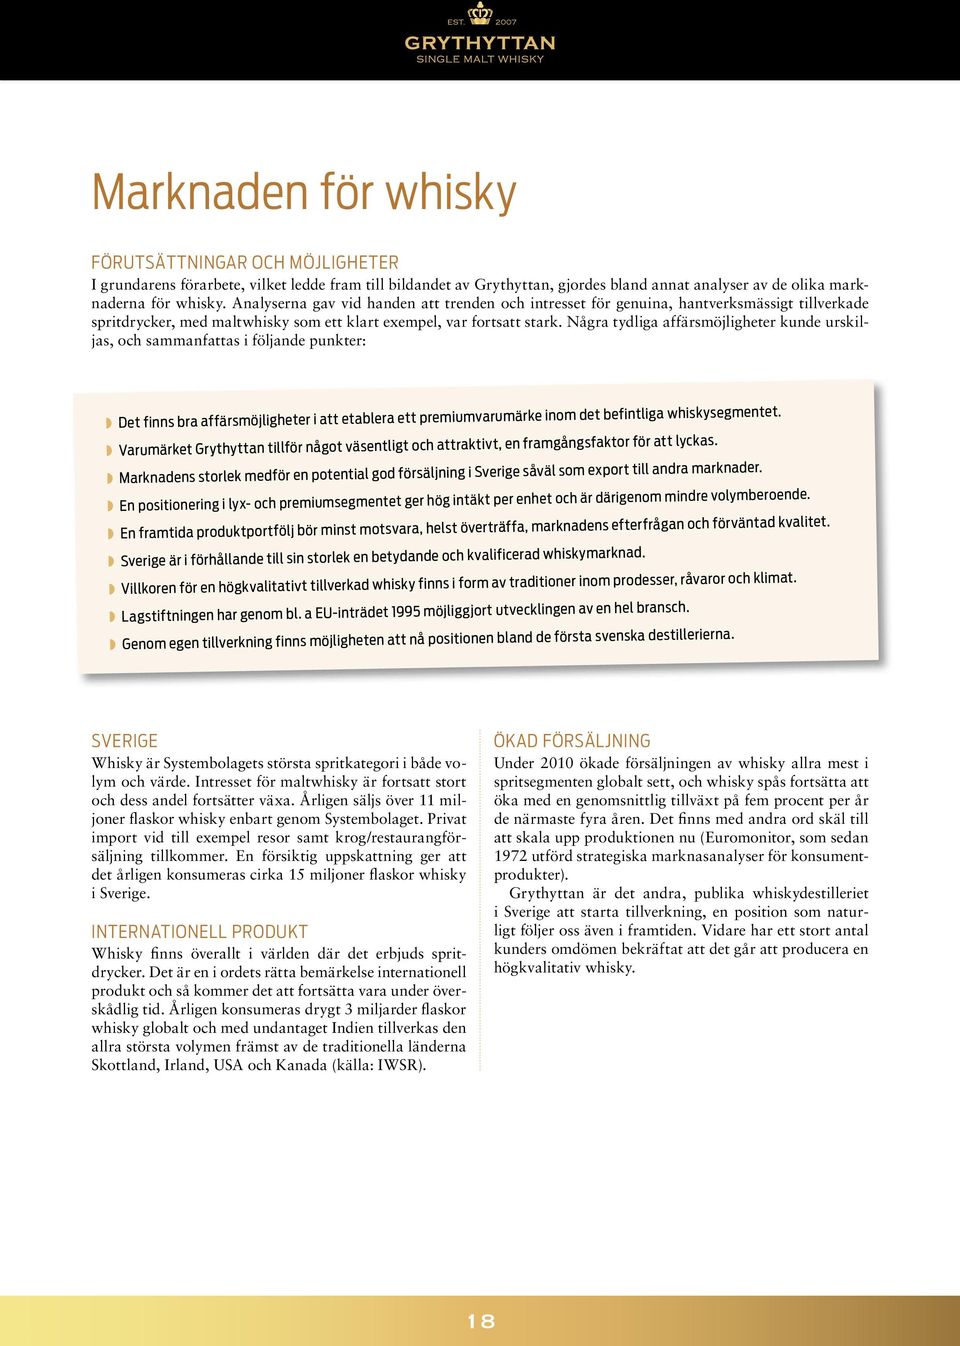 Några tydliga affärsmöjligheter kunde urskiljas, och sammanfattas i följande punkter: Det finns bra affärsmöjligheter i att etablera ett premiumvarumärke inom det befintliga whiskysegmentet.